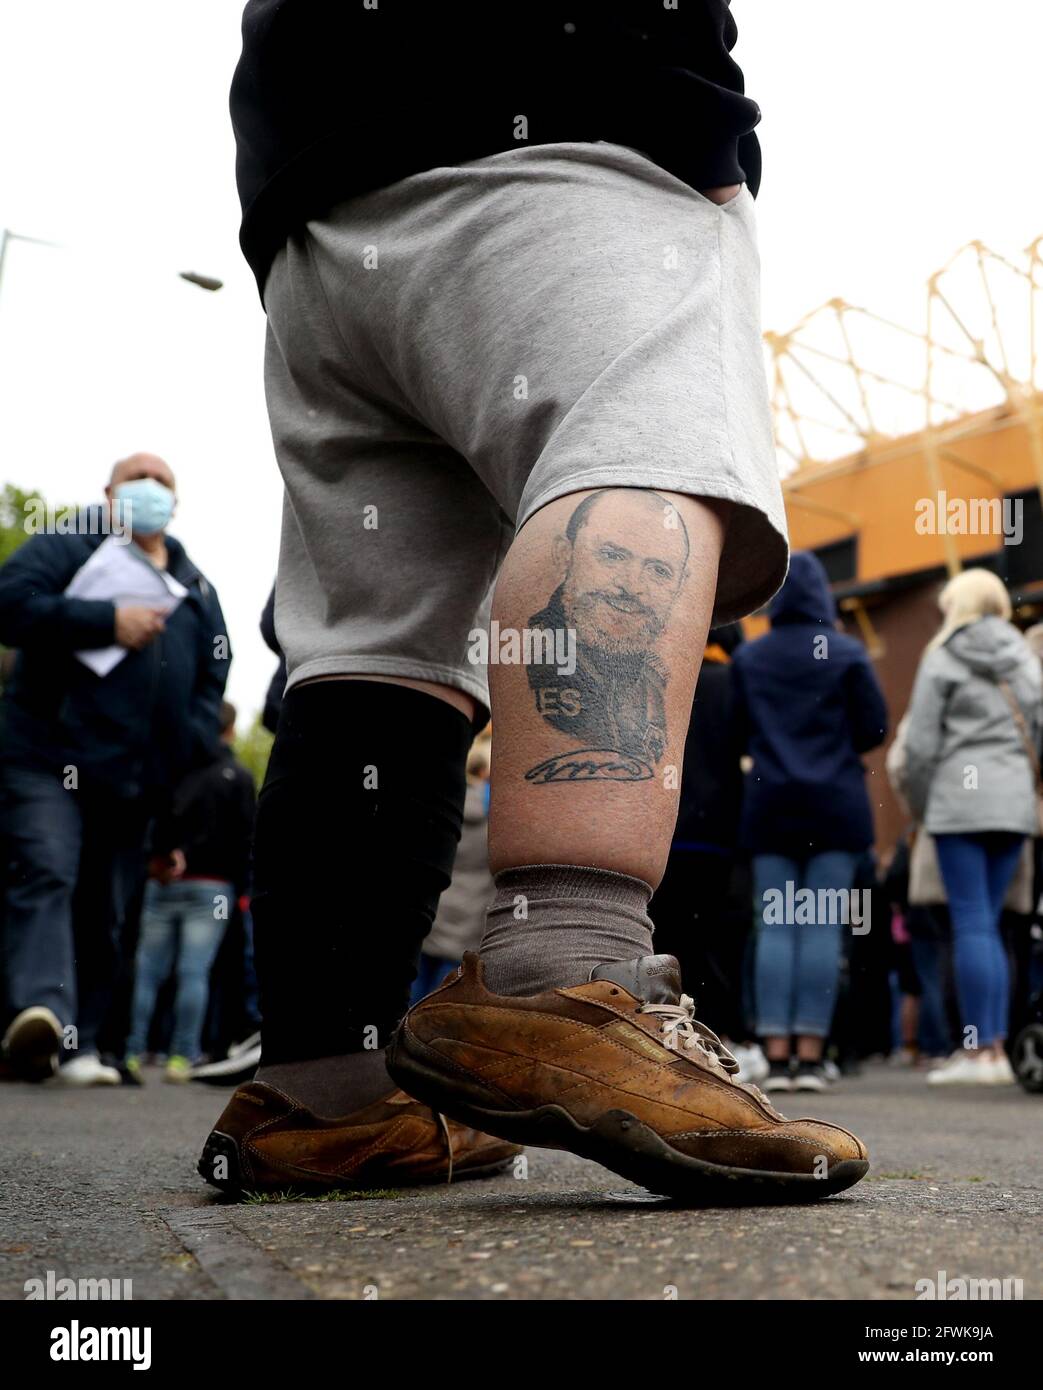 Ein Fan mit einer Tätowierung des Wolverhampton Wanderers Managers Nuno Espirito Santo auf seinem Bein, außerhalb des Stadions vor dem Premier League-Spiel im Molineux Stadium, Wolverhampton. Bilddatum: Sonntag, 23. Mai 2021. Stockfoto